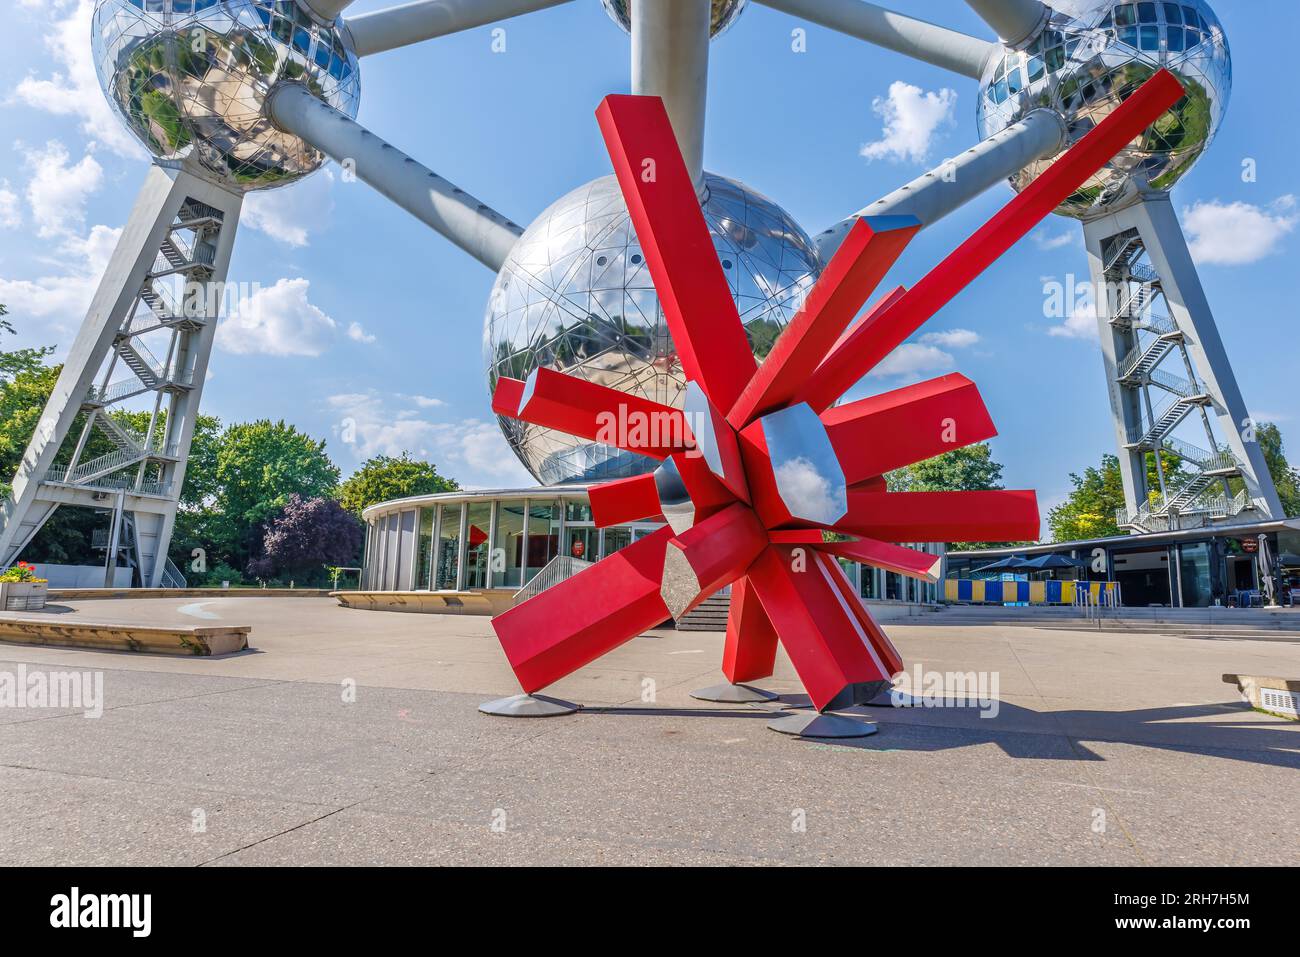 Bruselas, Bélgica - 15 de junio de 2023: El Atomium de Bruselas, un edificio modernista que representa un modelo de átomo de plata. Originalmente construido como el Foto de stock